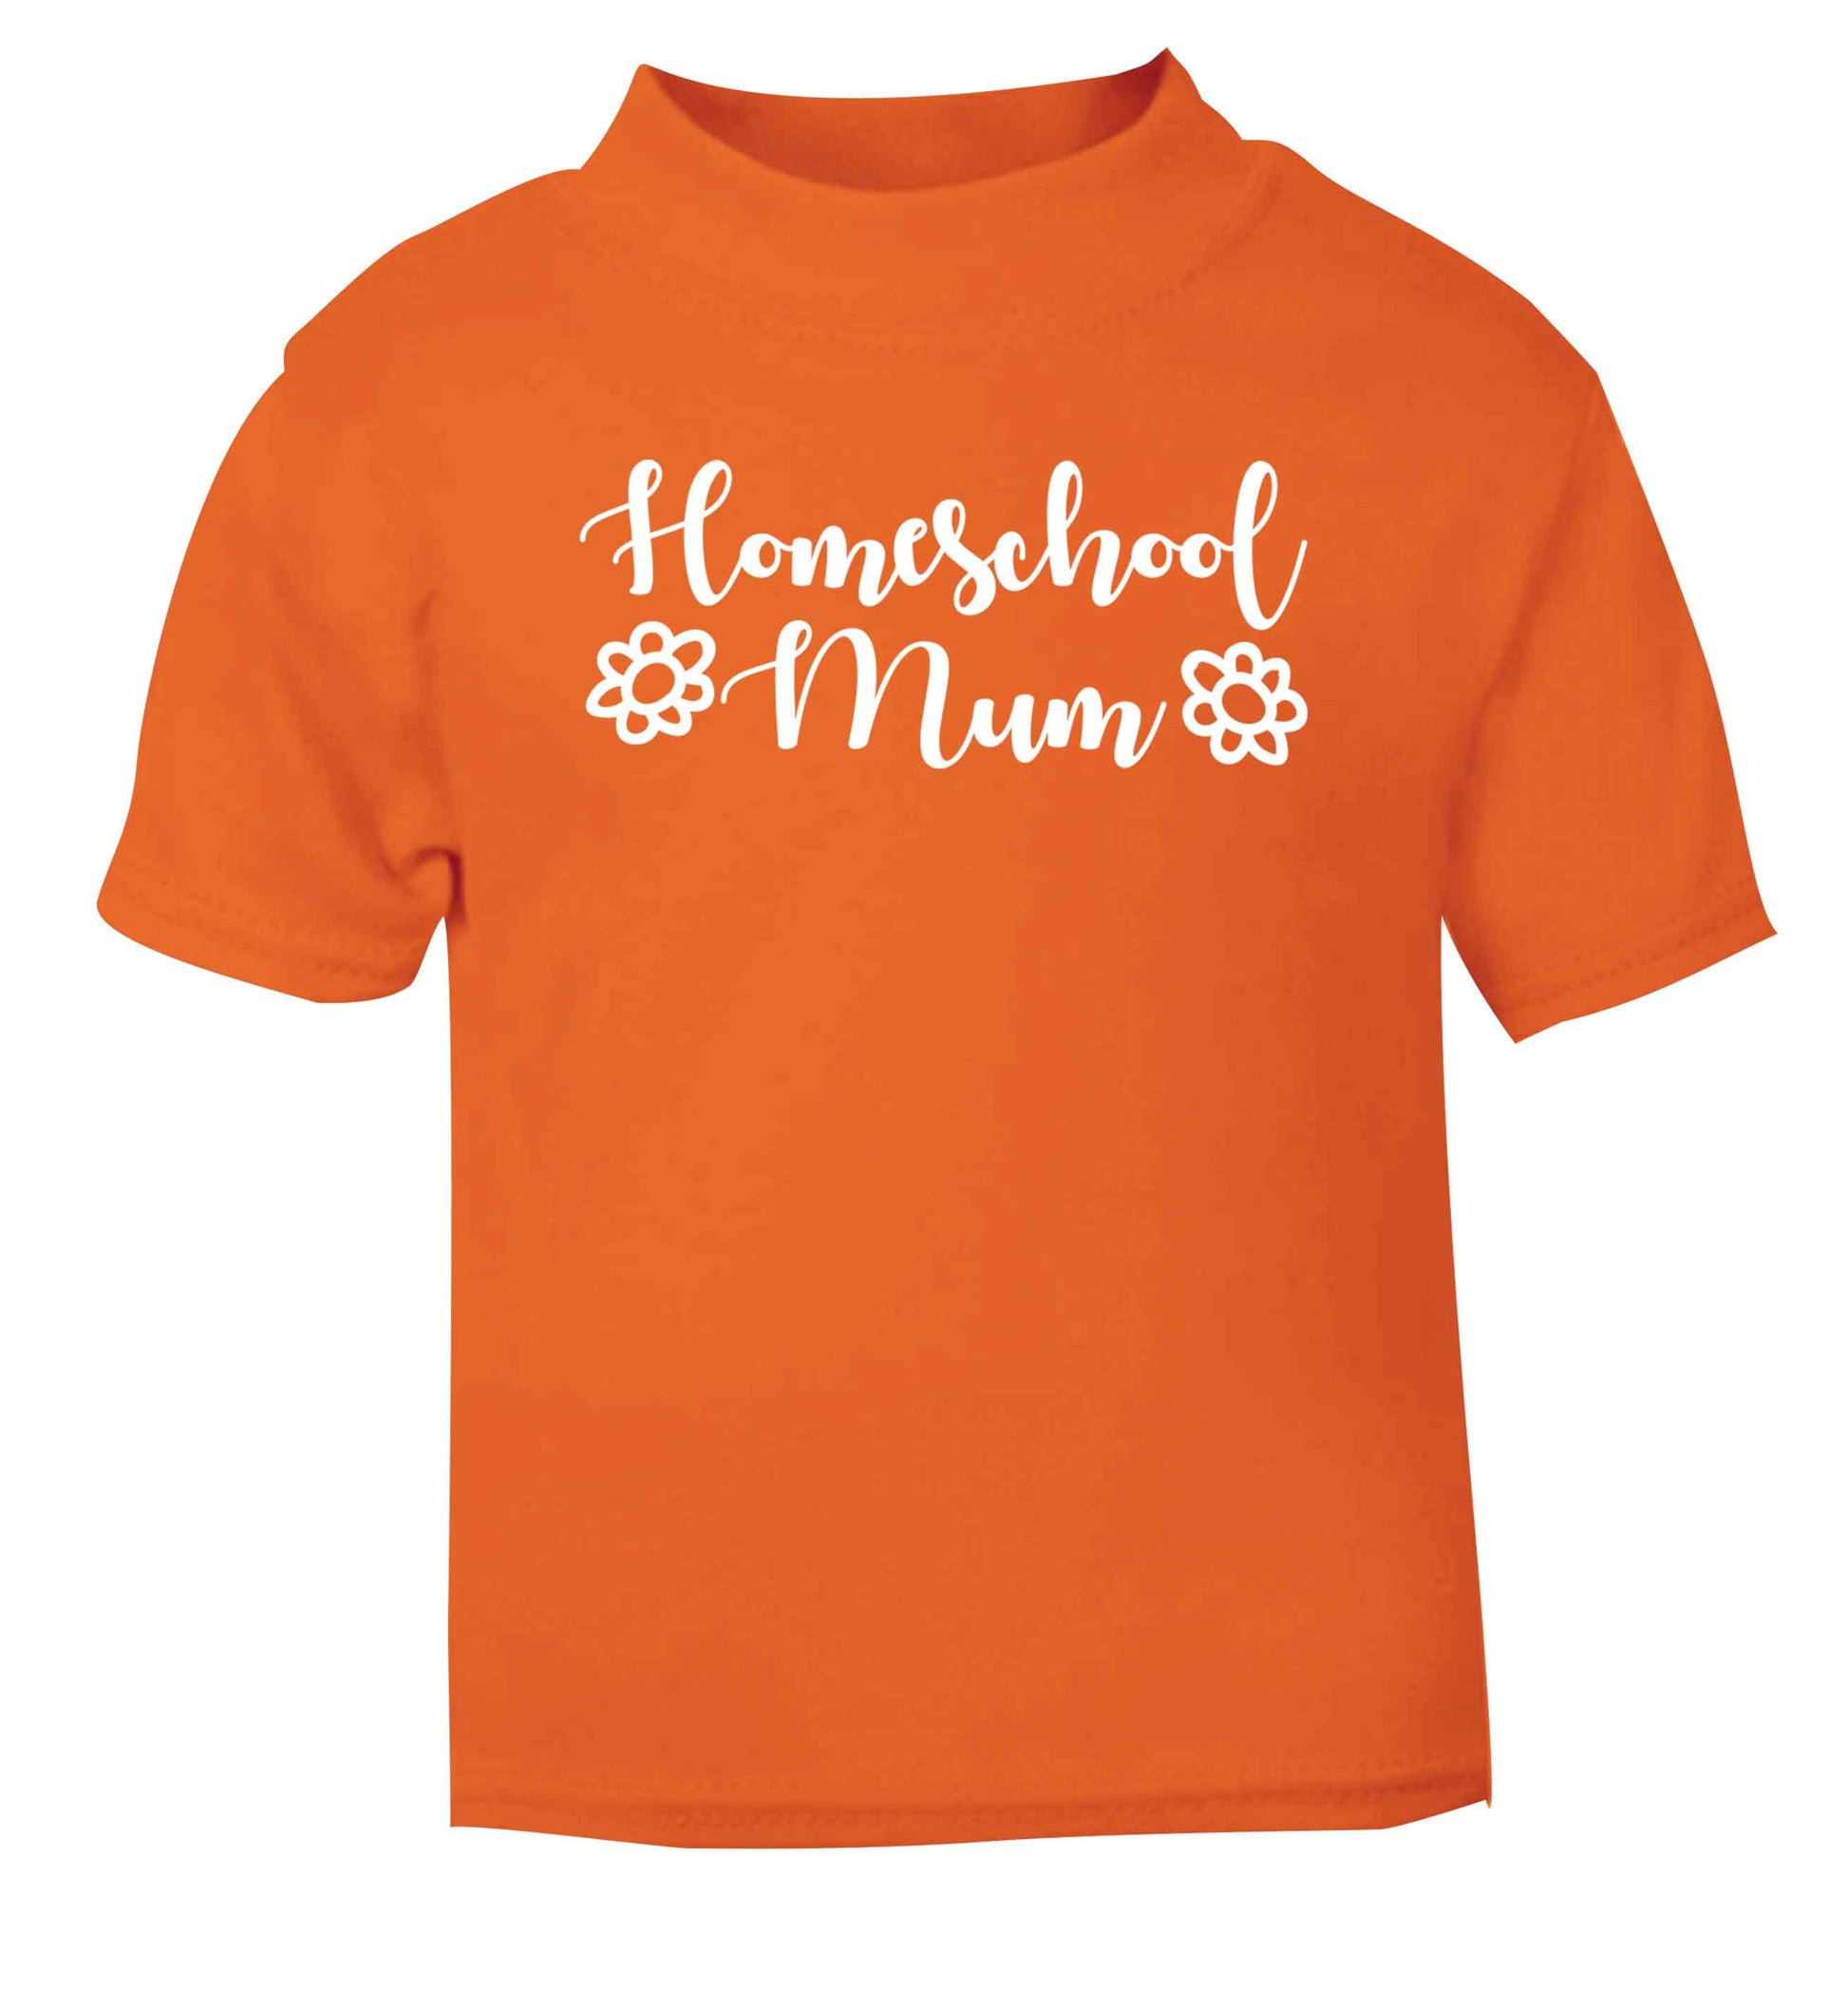 Homeschool mum orange Baby Toddler Tshirt 2 Years